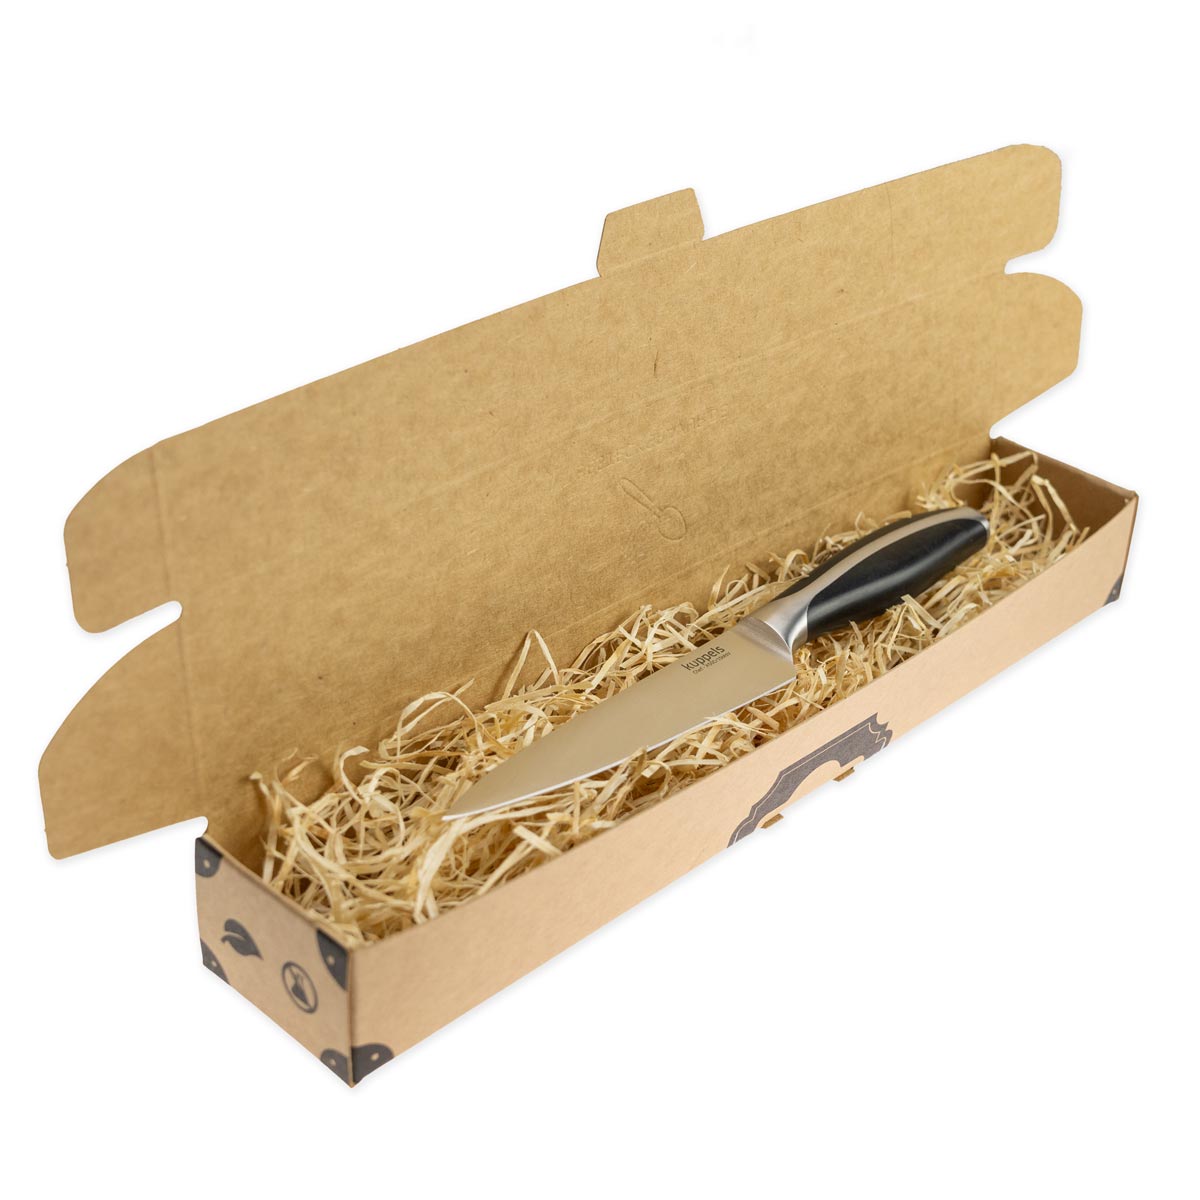 Allzweckmesser CHEF Kuppels Allzweckmesser mit persönlicher Gravur - mit Verpackung schräg